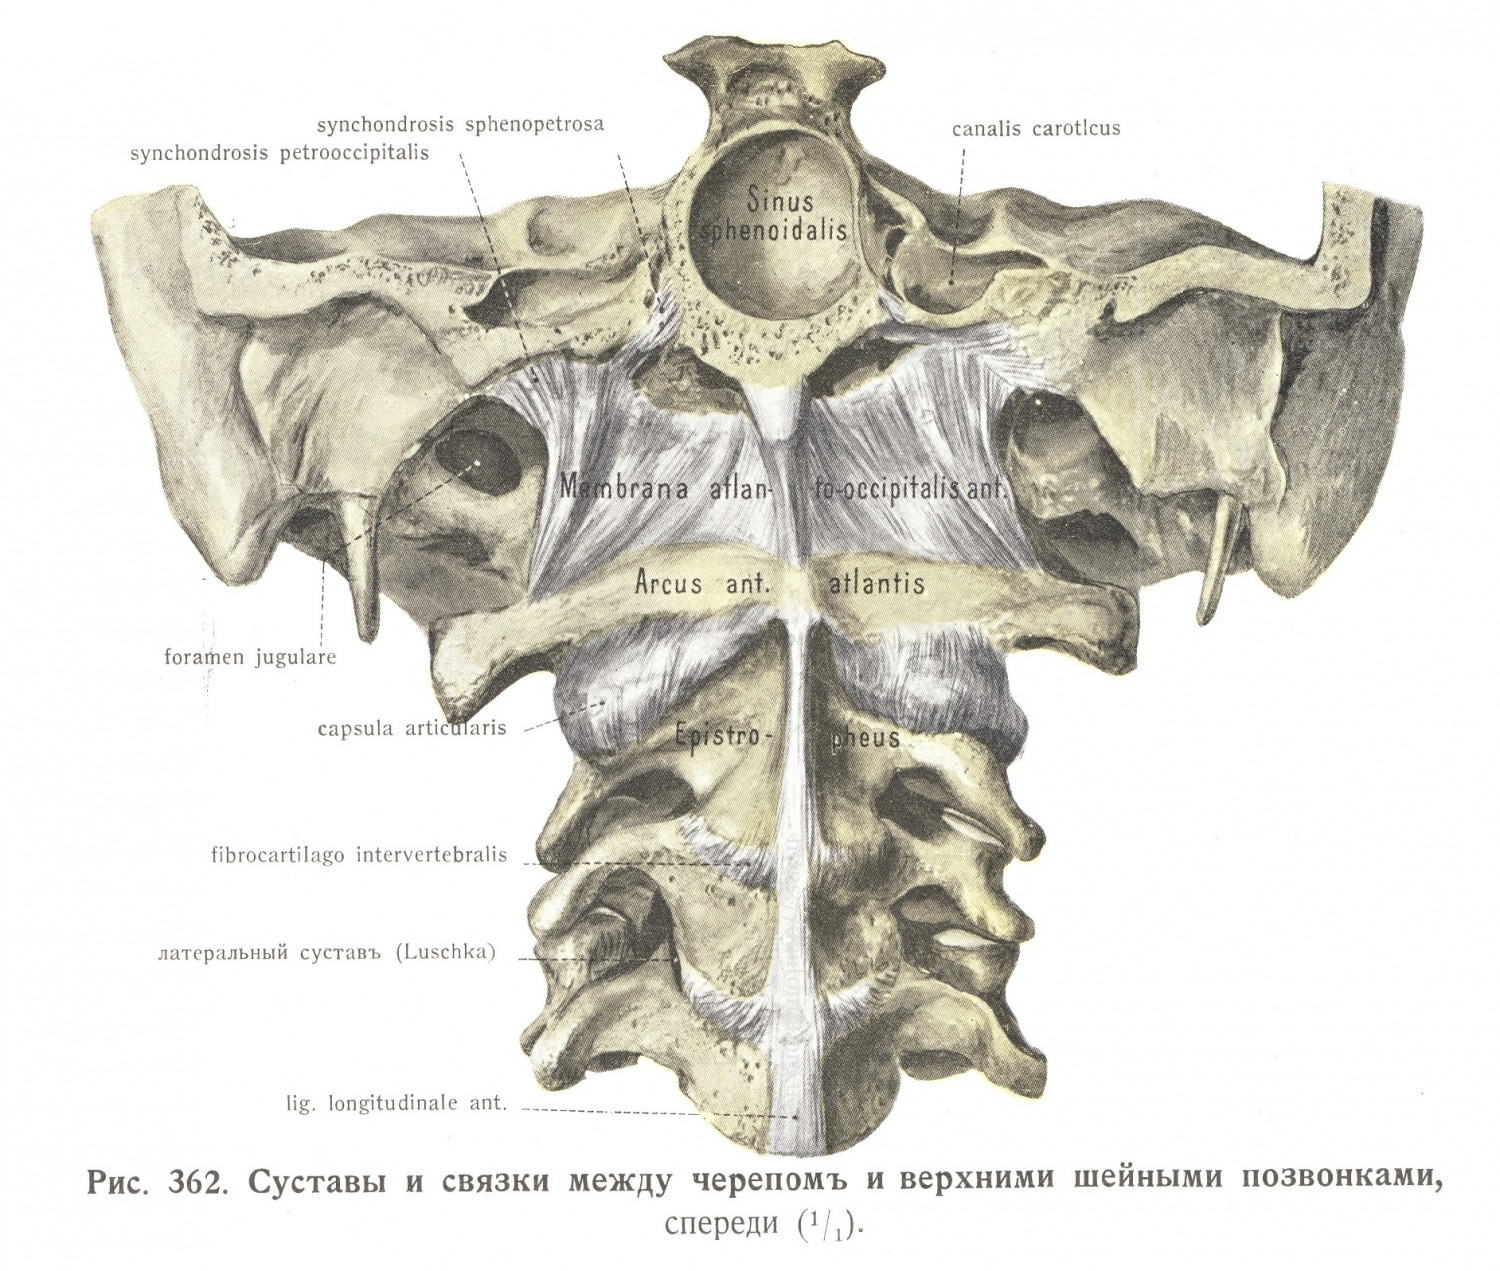 Суставы и связки между черепом и верхними шейными позвонками